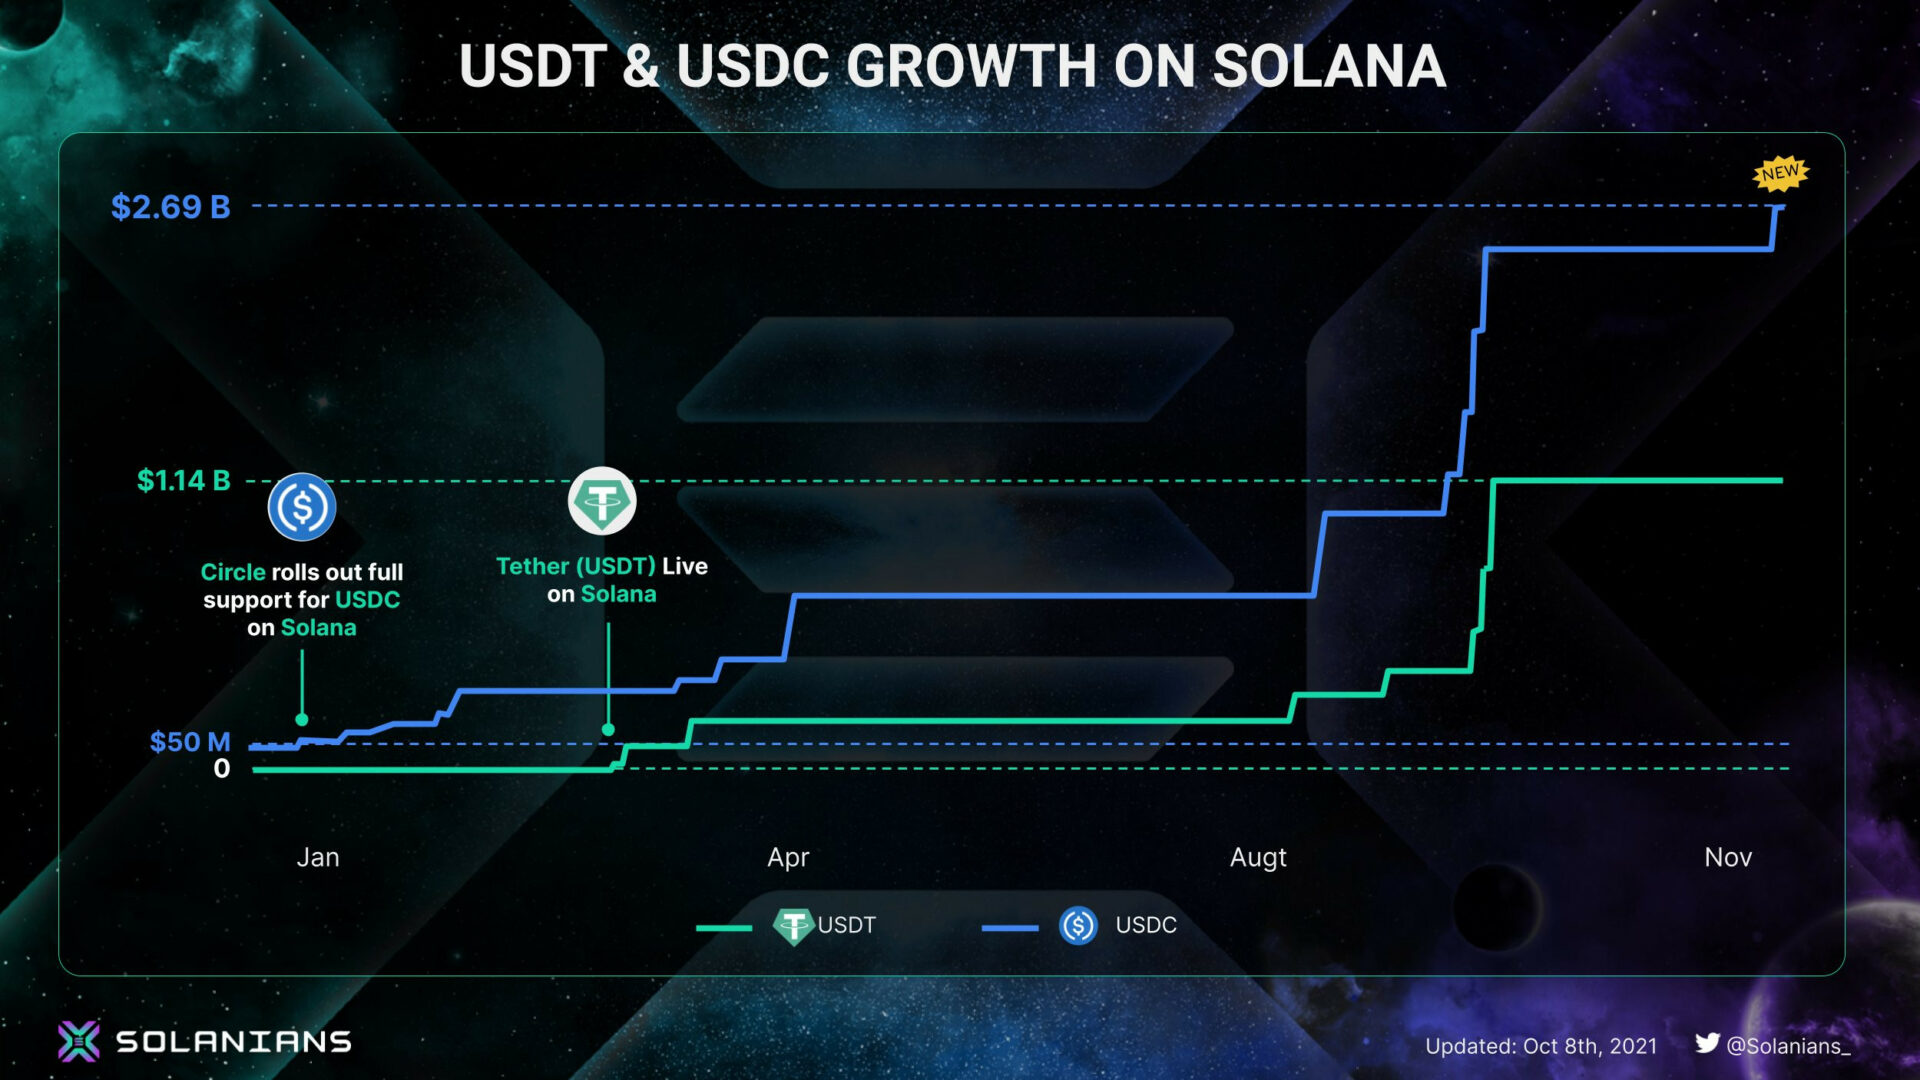 Sự kiện hợp tác của Solana và USDC là một trong những yếu tố khiến Solana tăng trưởng vượt bậc